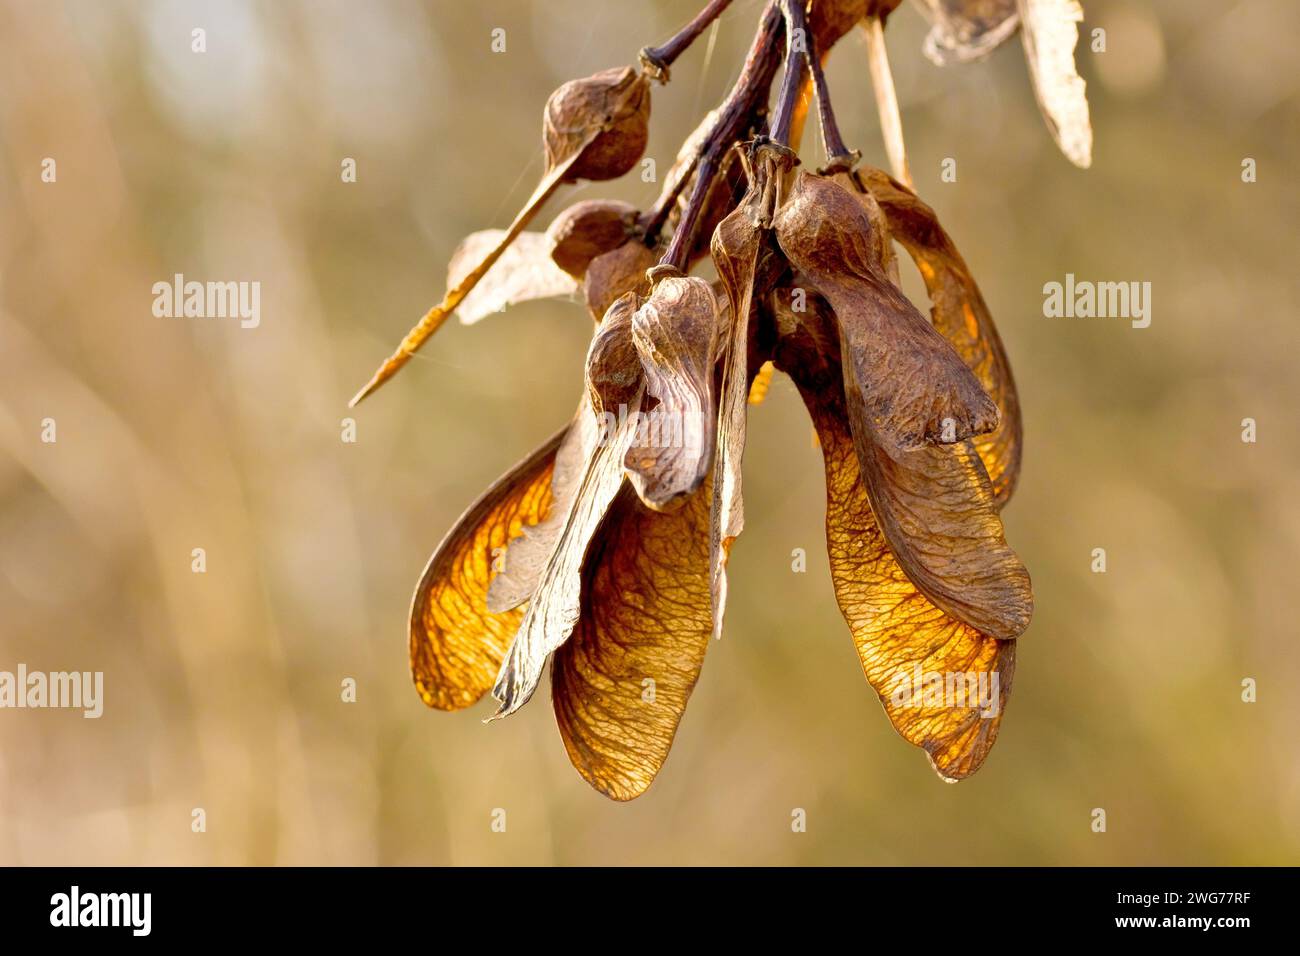 Sycamore (Acer pseudoplatanus), Nahaufnahme, die eine Gruppe der charakteristischen geflügelten Samen des Baumes zeigt, die von einer niedrigen Herbstsonne beleuchtet werden. Stockfoto